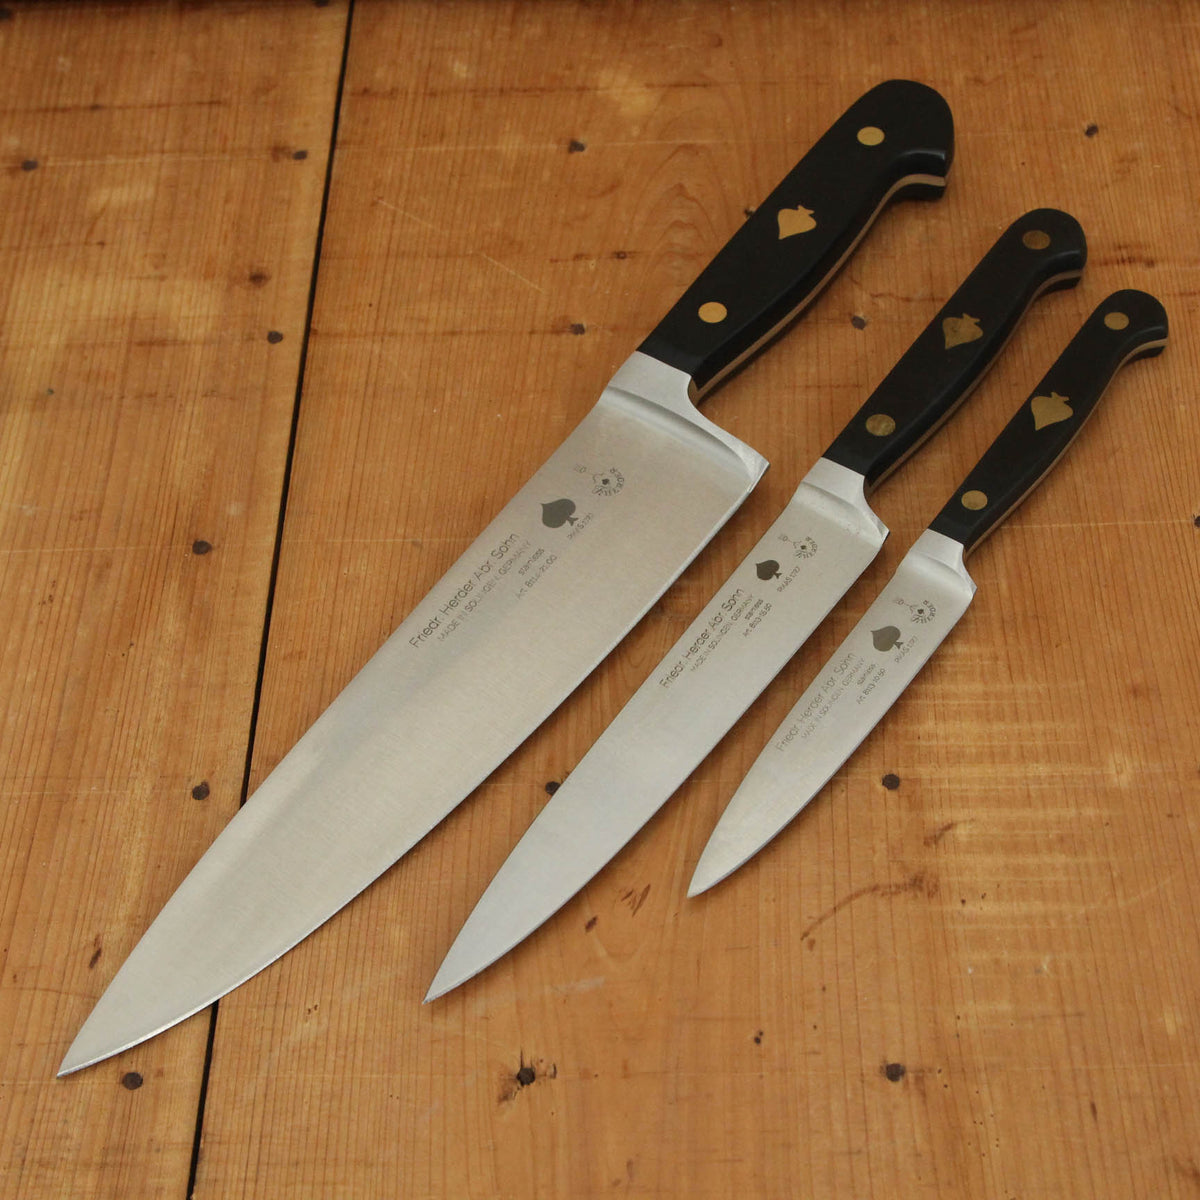 Premium 6-Knife Set - Limited Offer – Coolina